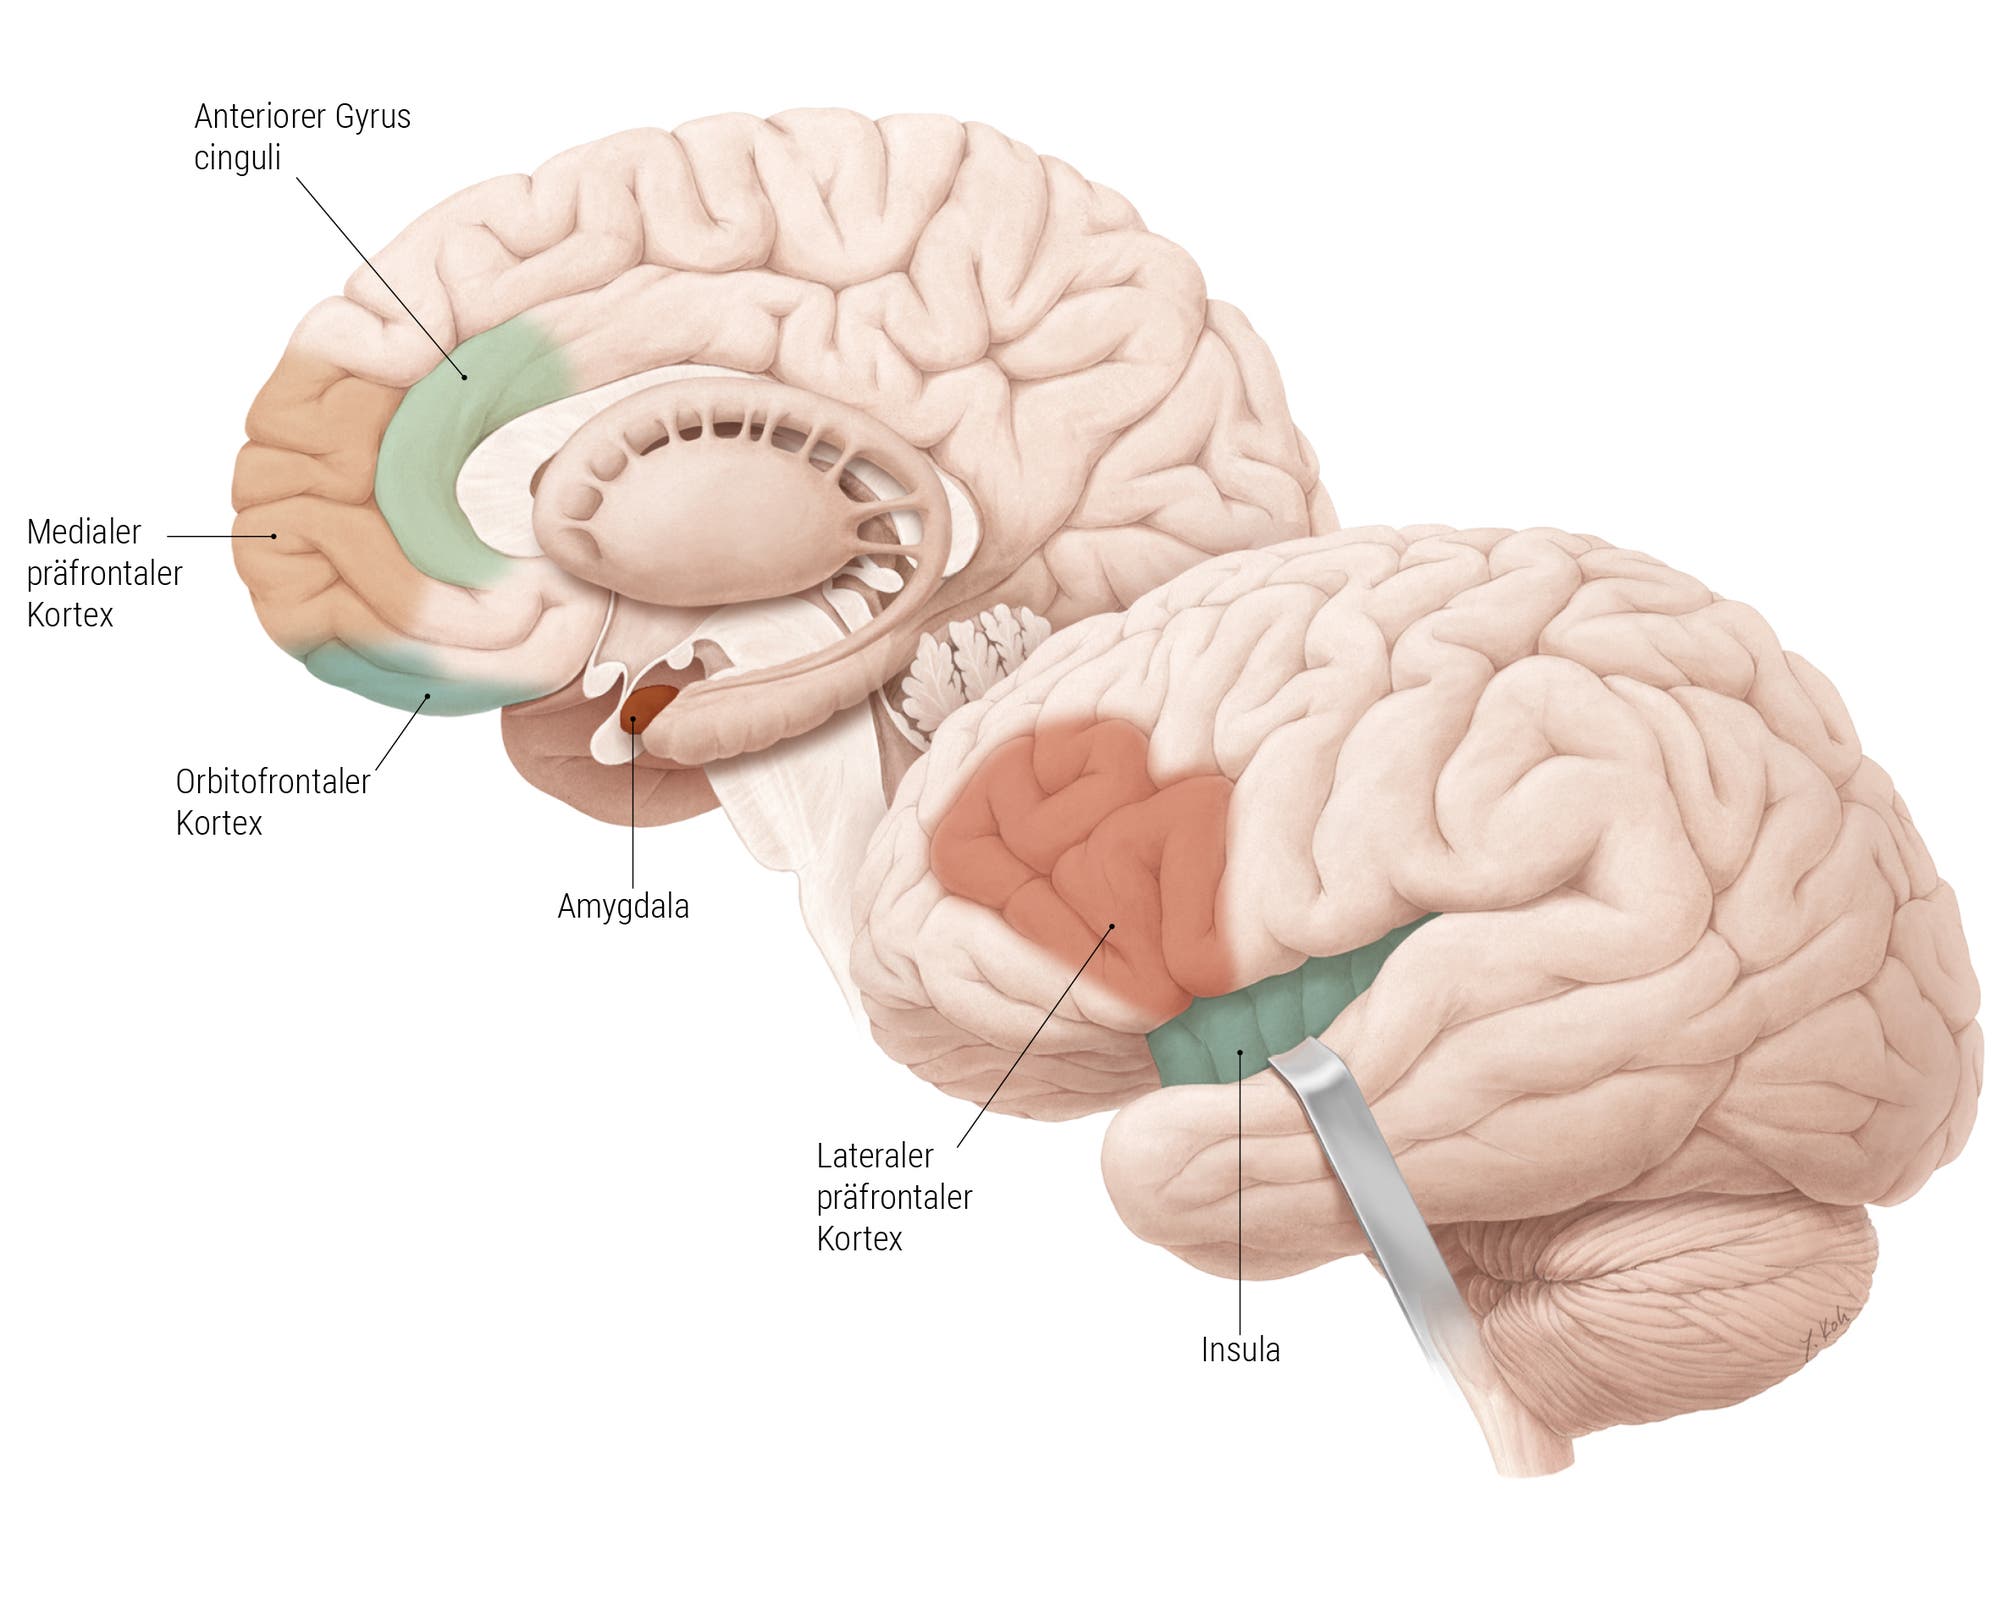 Seitliche Ansicht eines Gehirns, in dem folgende Areale farblich markiert sind: lateraler präfrontaler Kortex, Insula, orbitofrontaler Kortex, medialer präfrontaler Kortex, anteriorer Gyrus cinguli, Amygdala